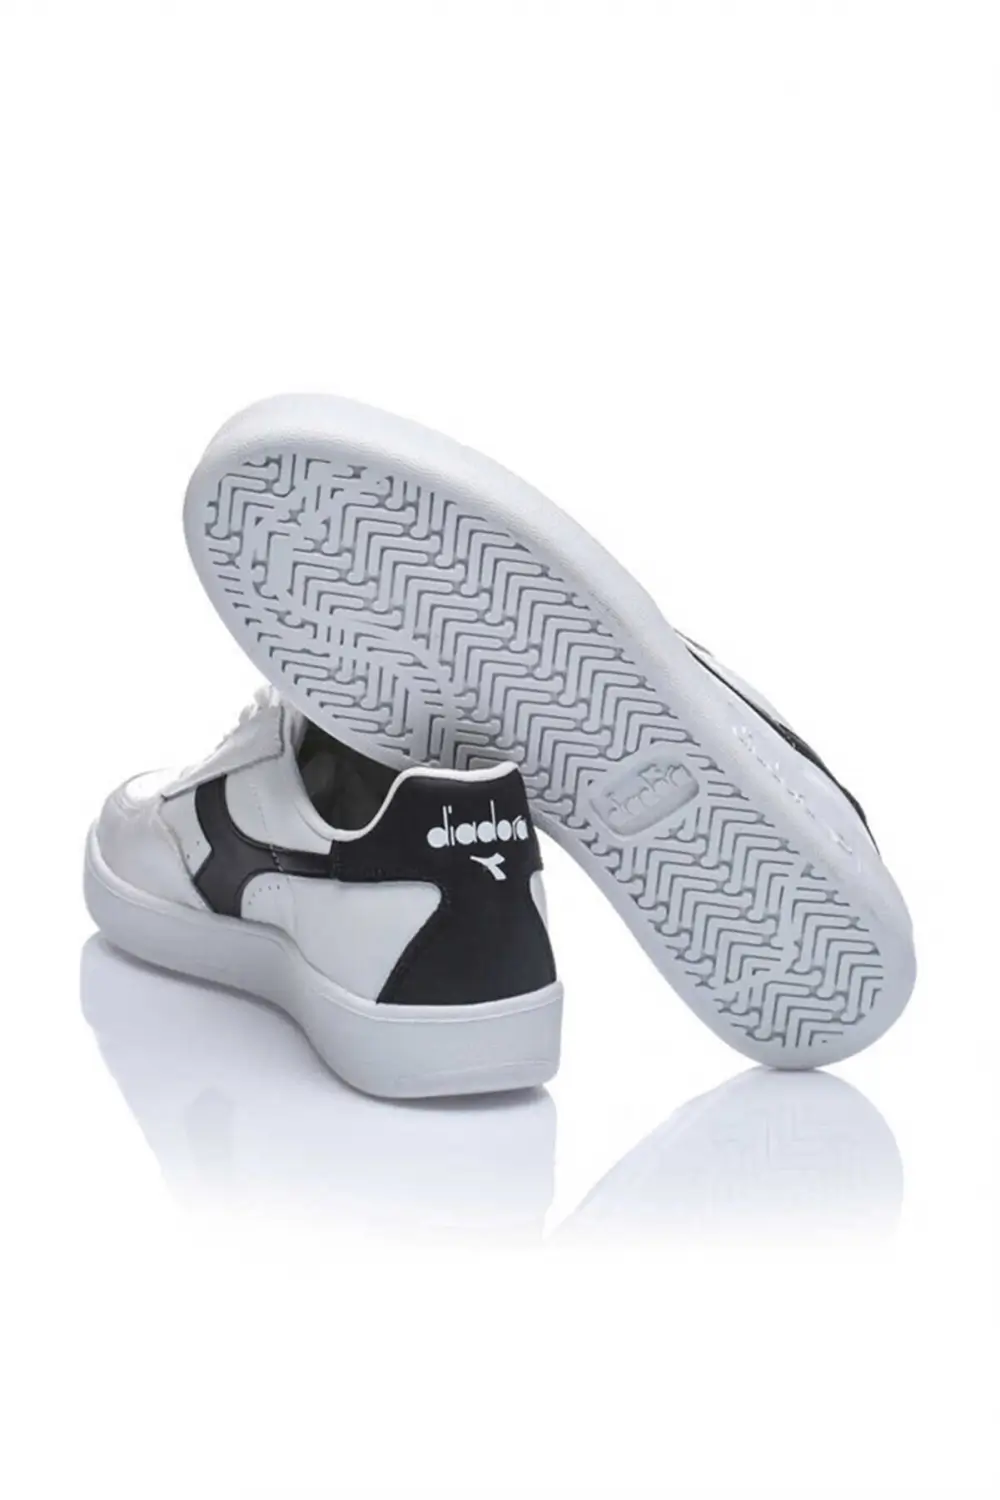 Diadora B. Elite Beyaz Erkek Günlük Ayakkabı - 170595-C5943